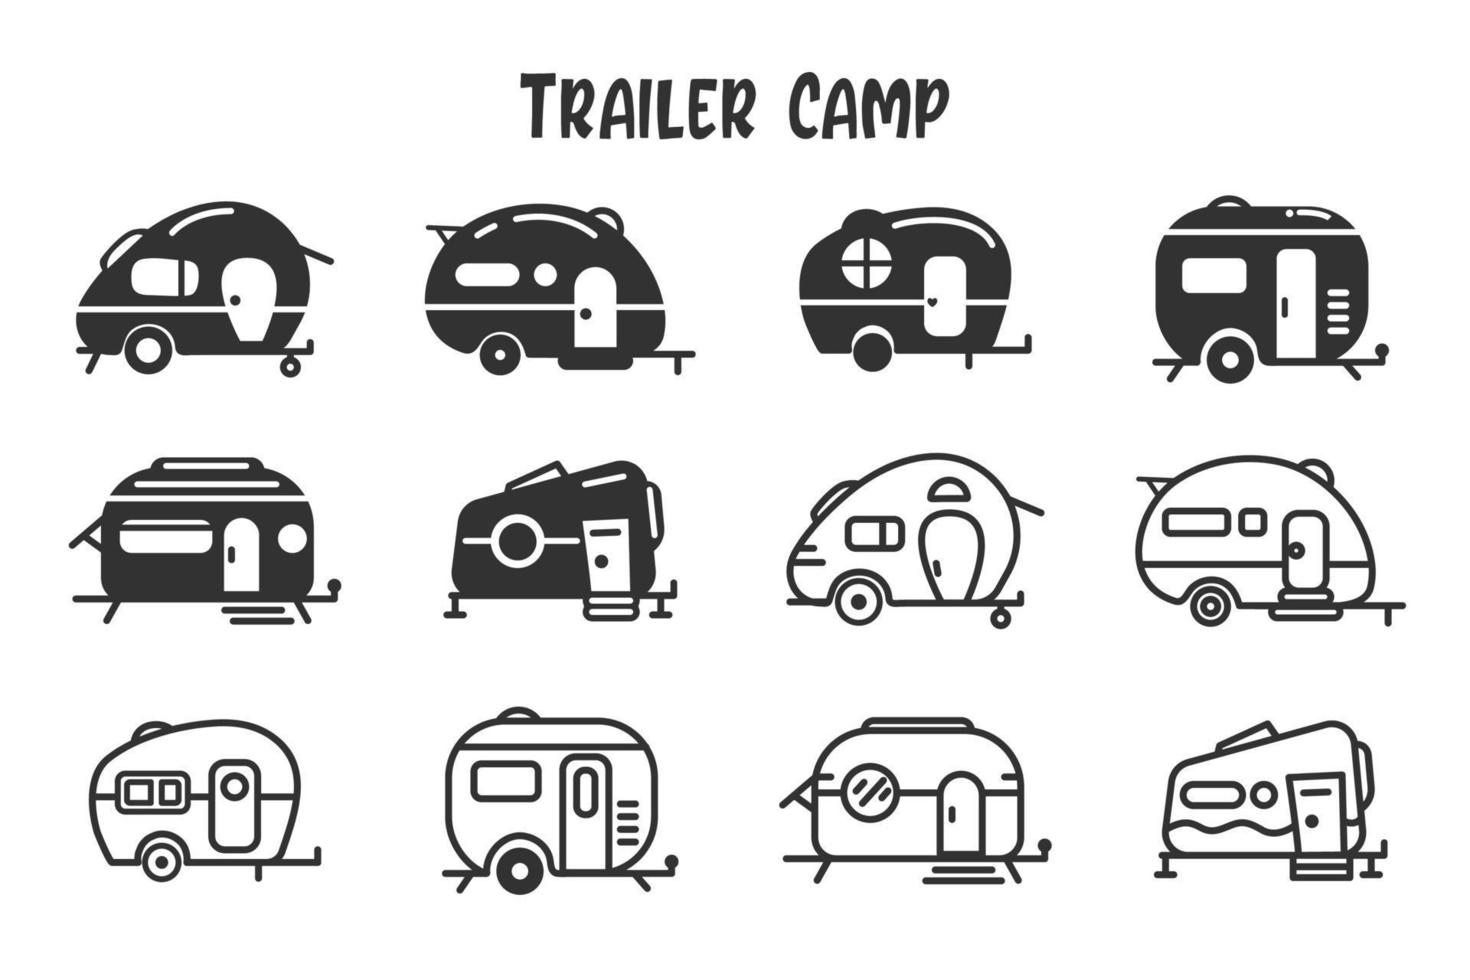 Camper trailer icon set vector